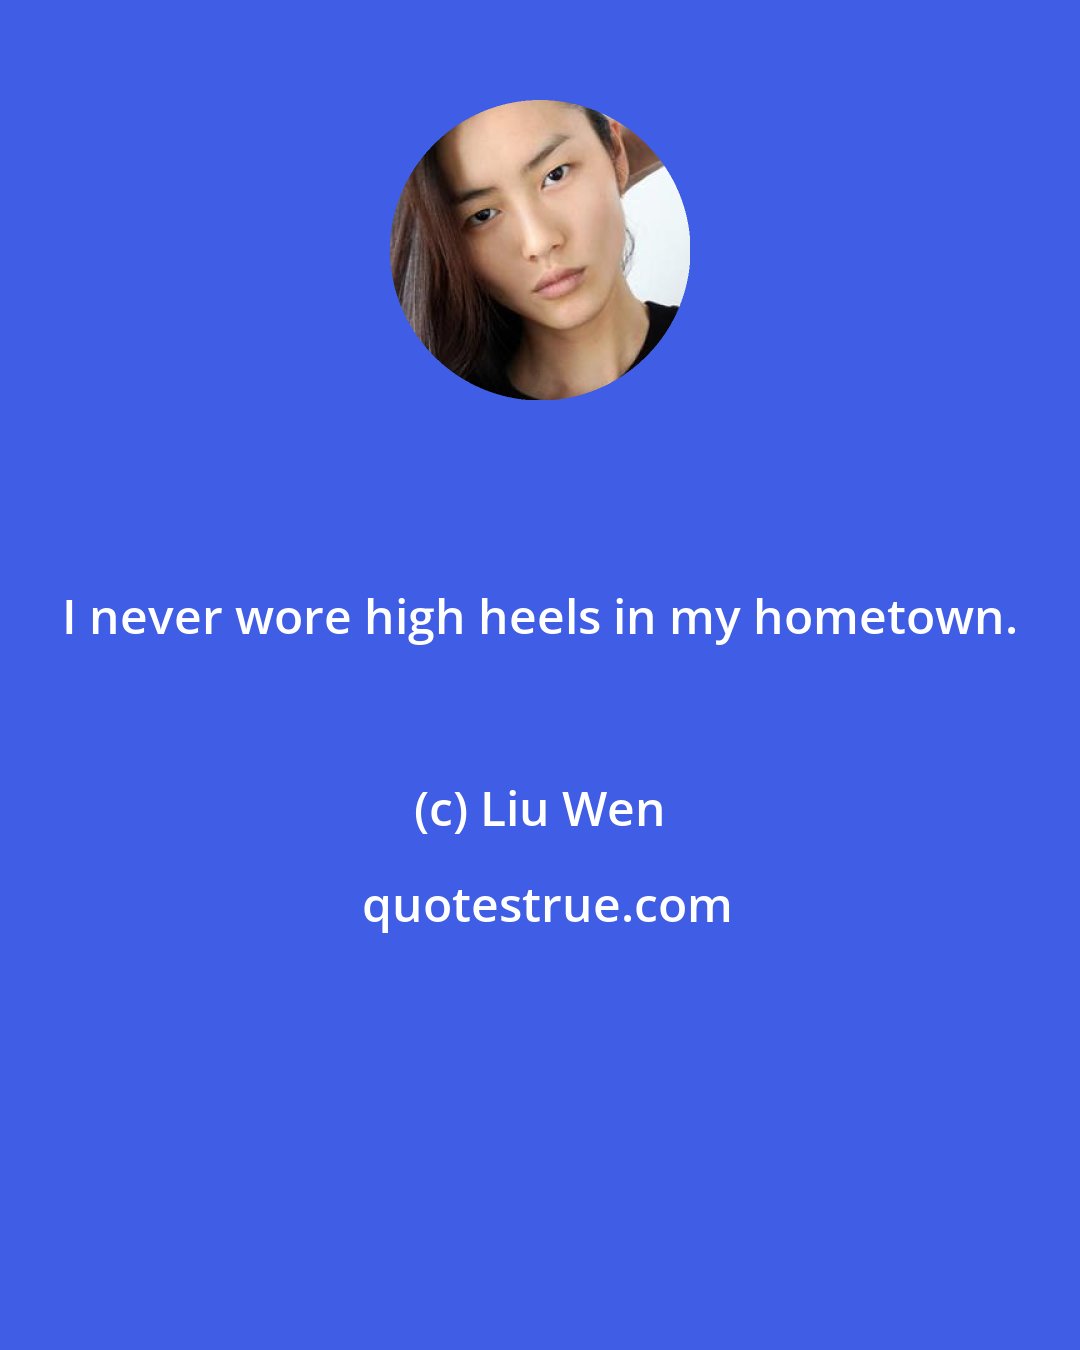 Liu Wen: I never wore high heels in my hometown.